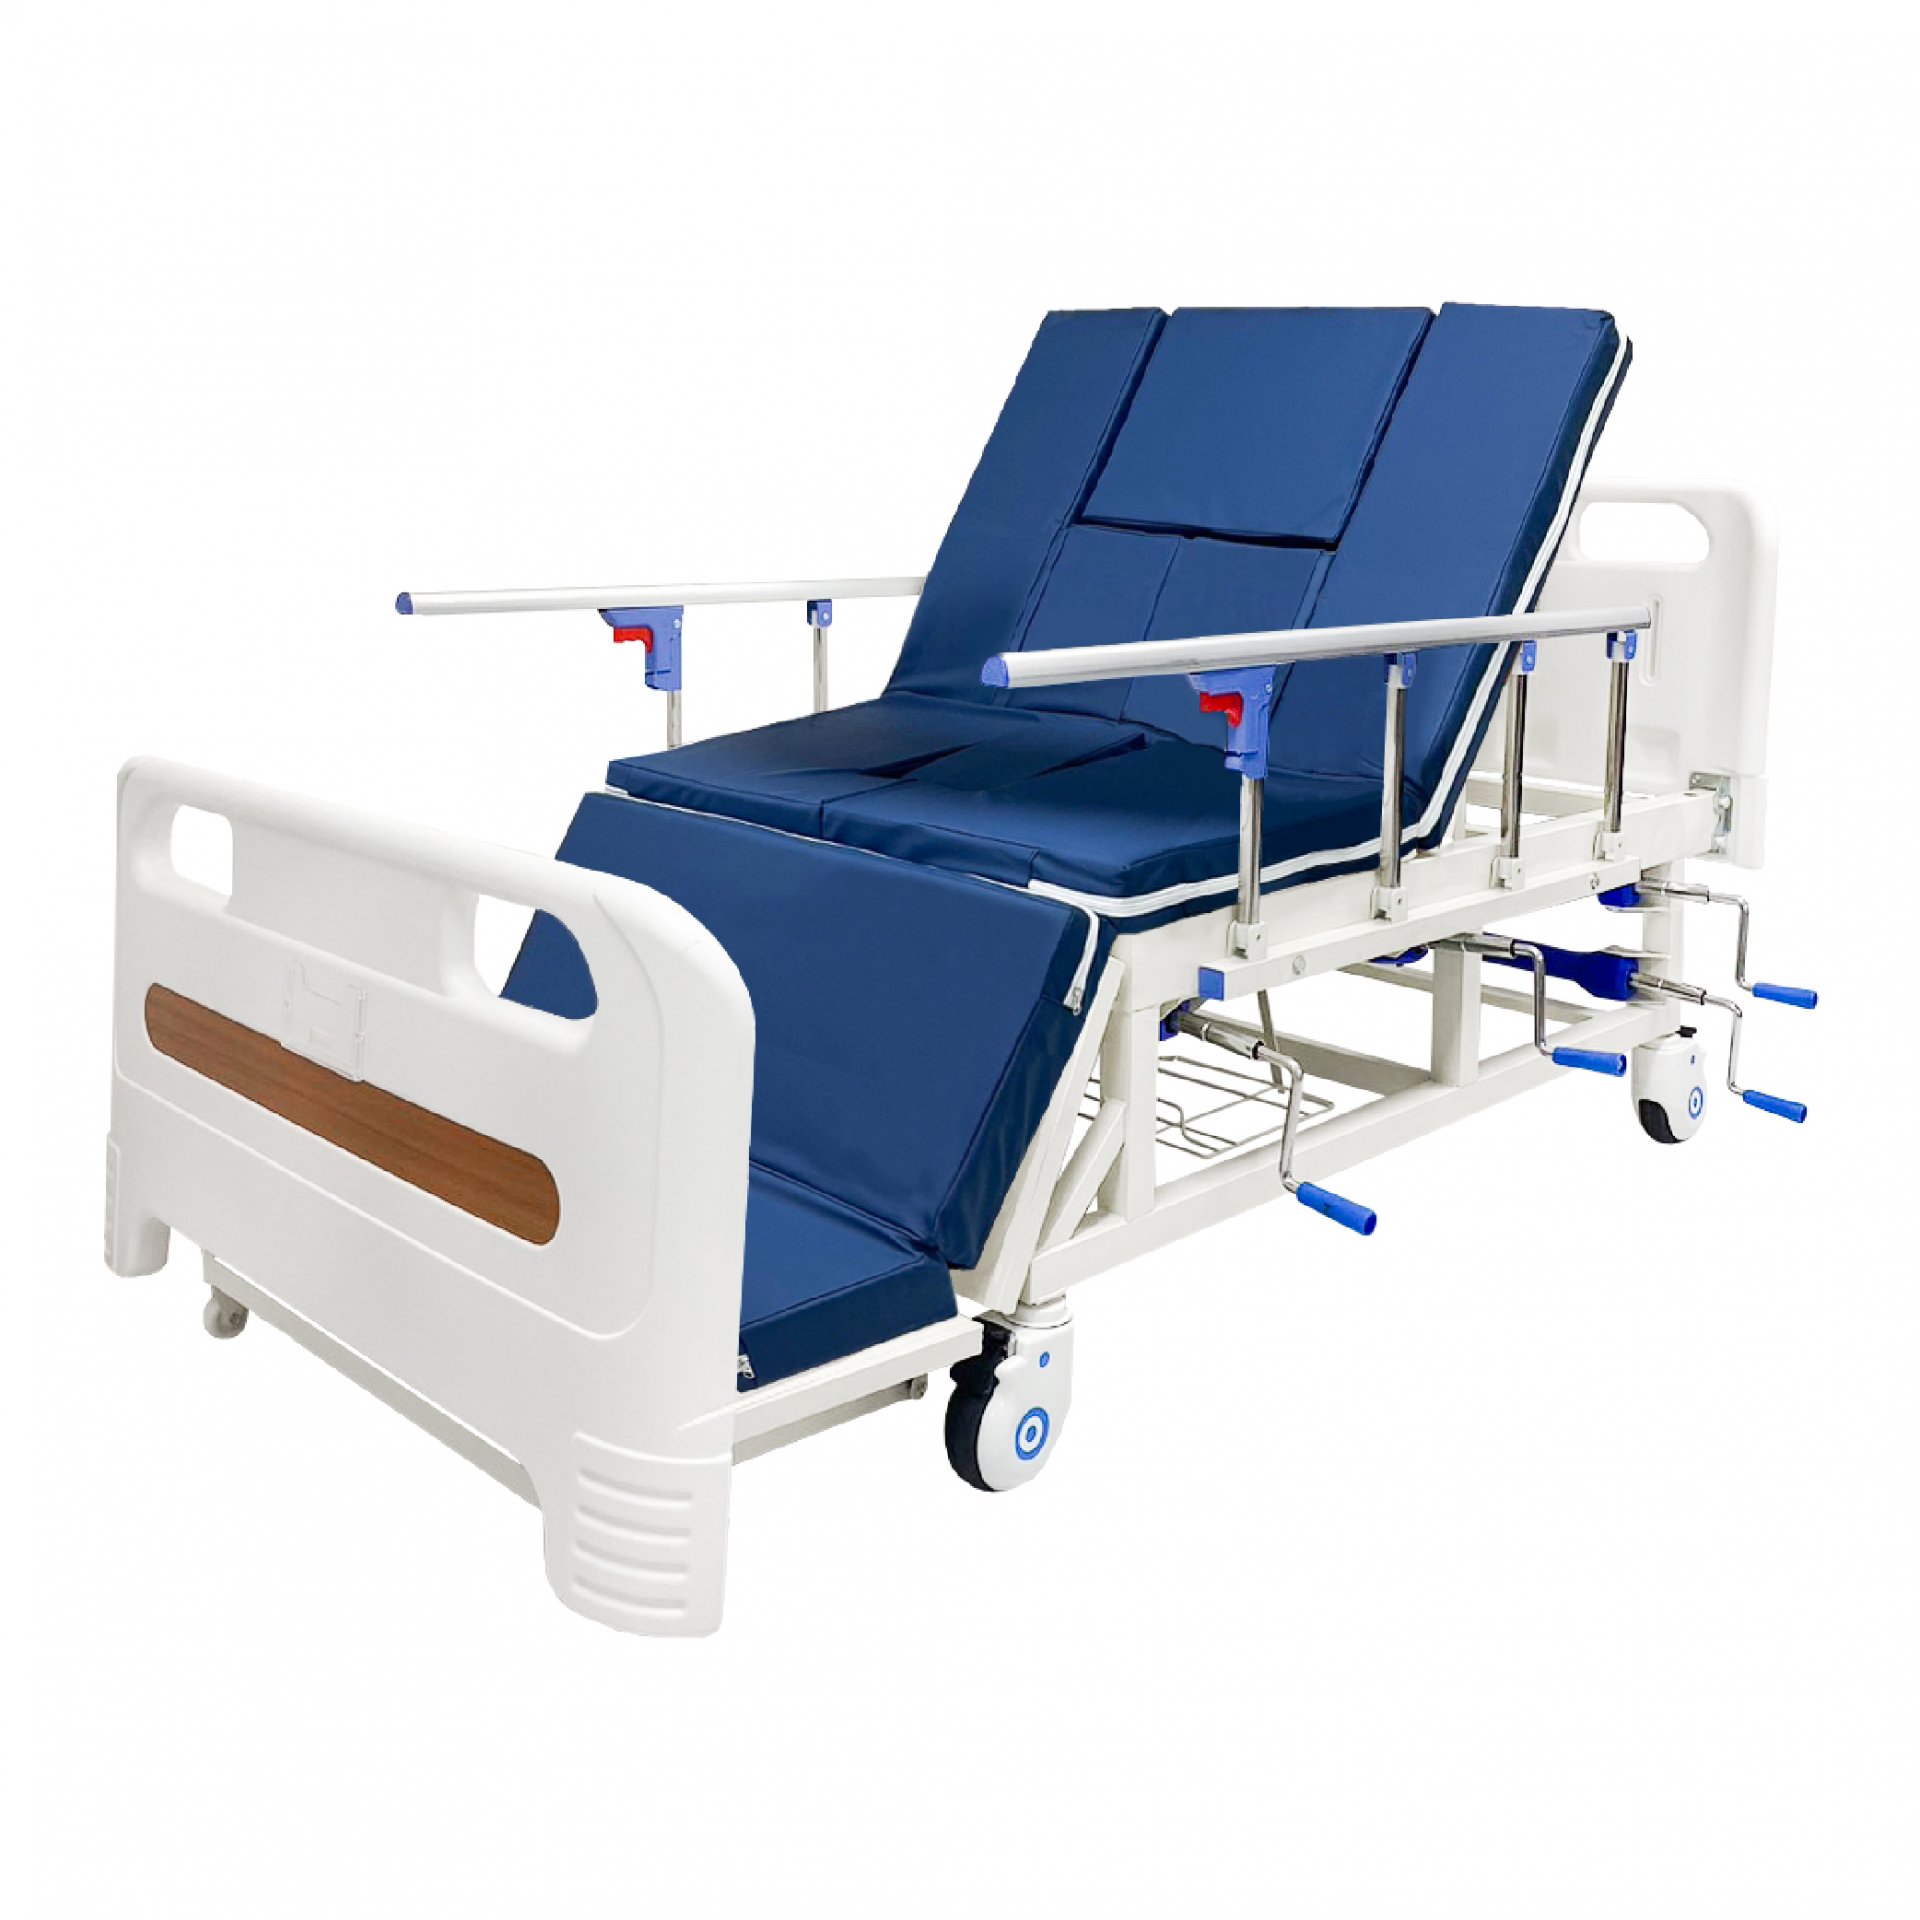 Nursing bed premium JDH03 | 2 year warranty